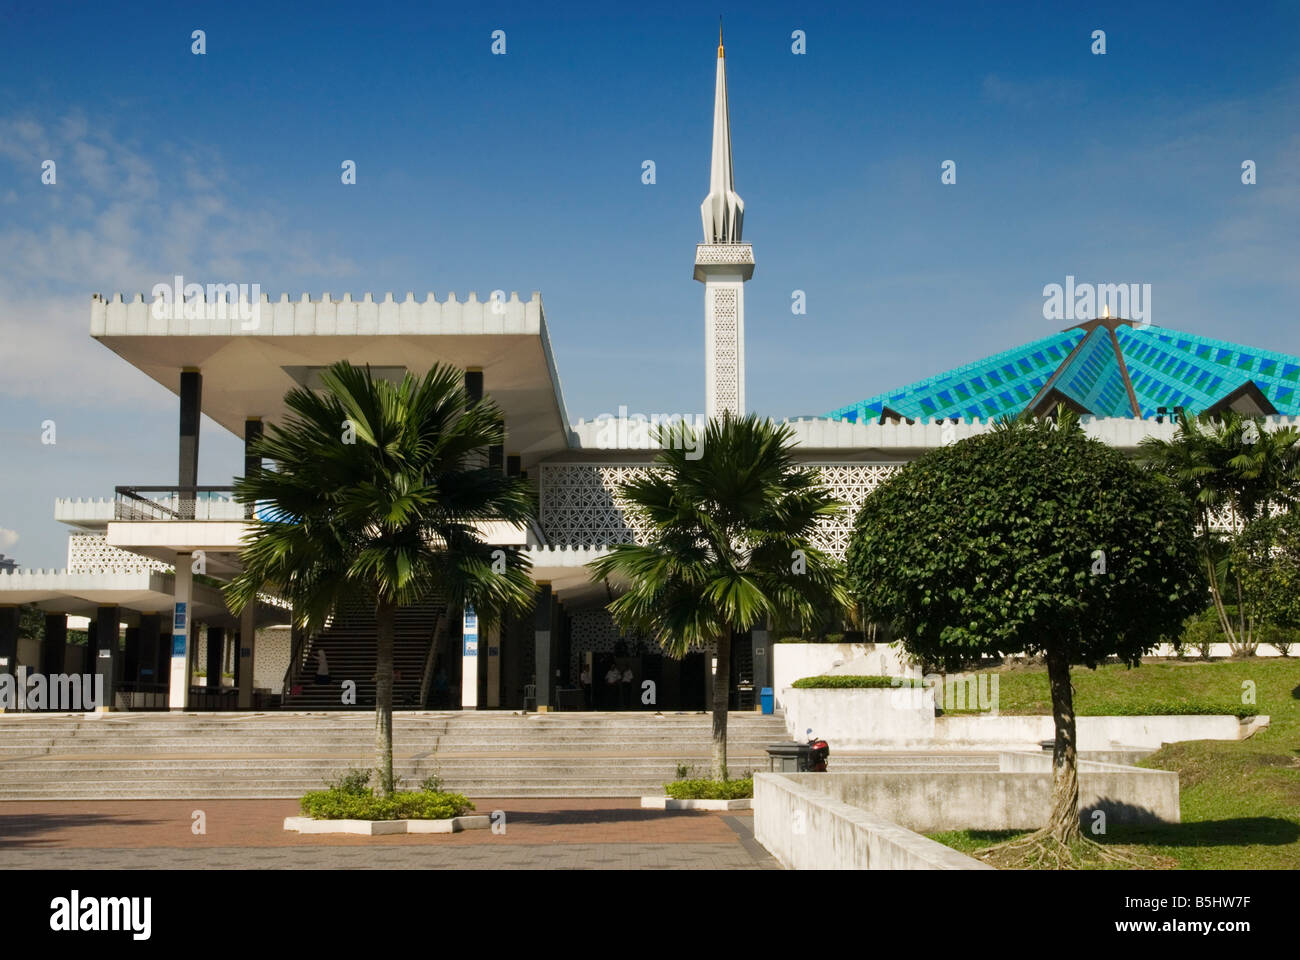 Masjid Negara Moschee, die Nationale Moschee von Malaysia mit seinen 18 Point Blue Star geformtes Dach und hoch aufragenden Minarett, Kuala Lumpur, Malaysia Stockfoto